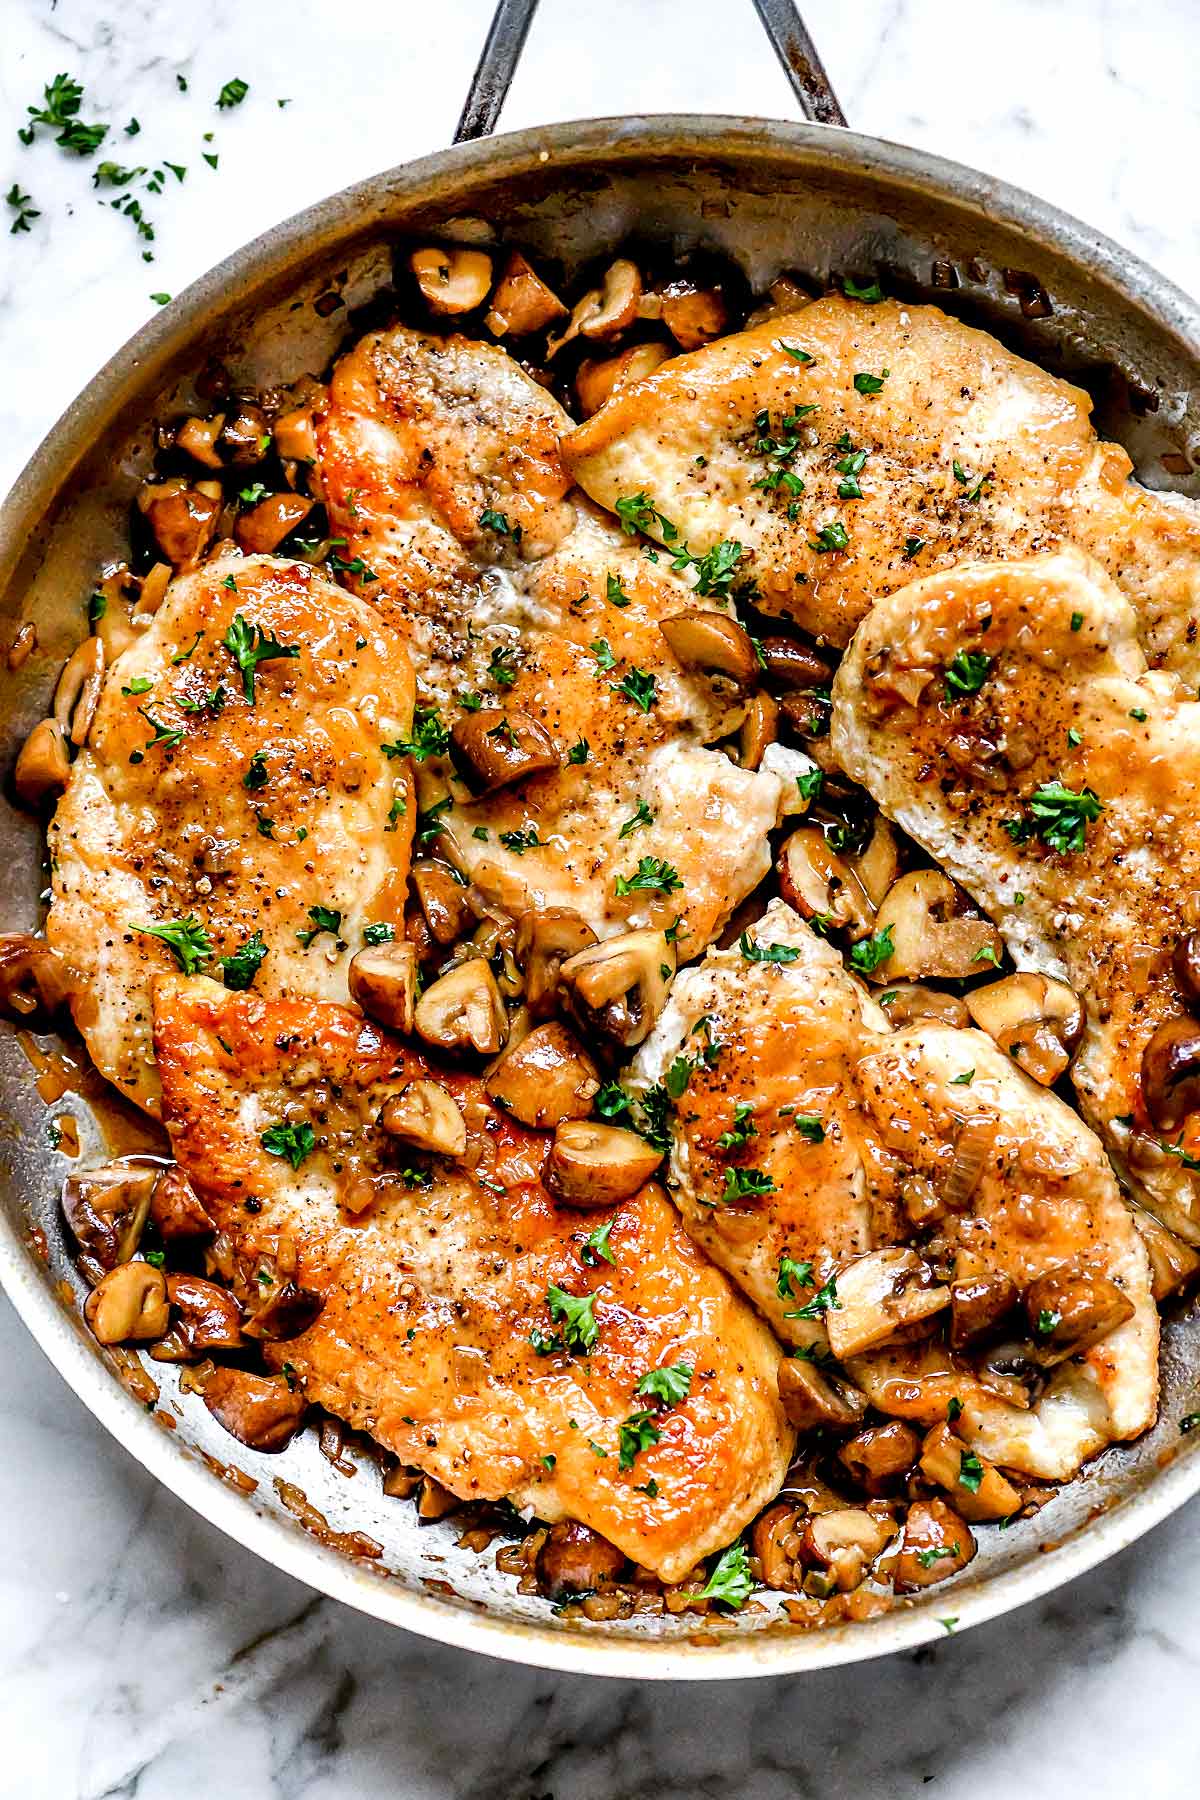 Poulet Marsala facile | foodiecrush.com #marsala #poulet #dîner #recipe #facile #santé